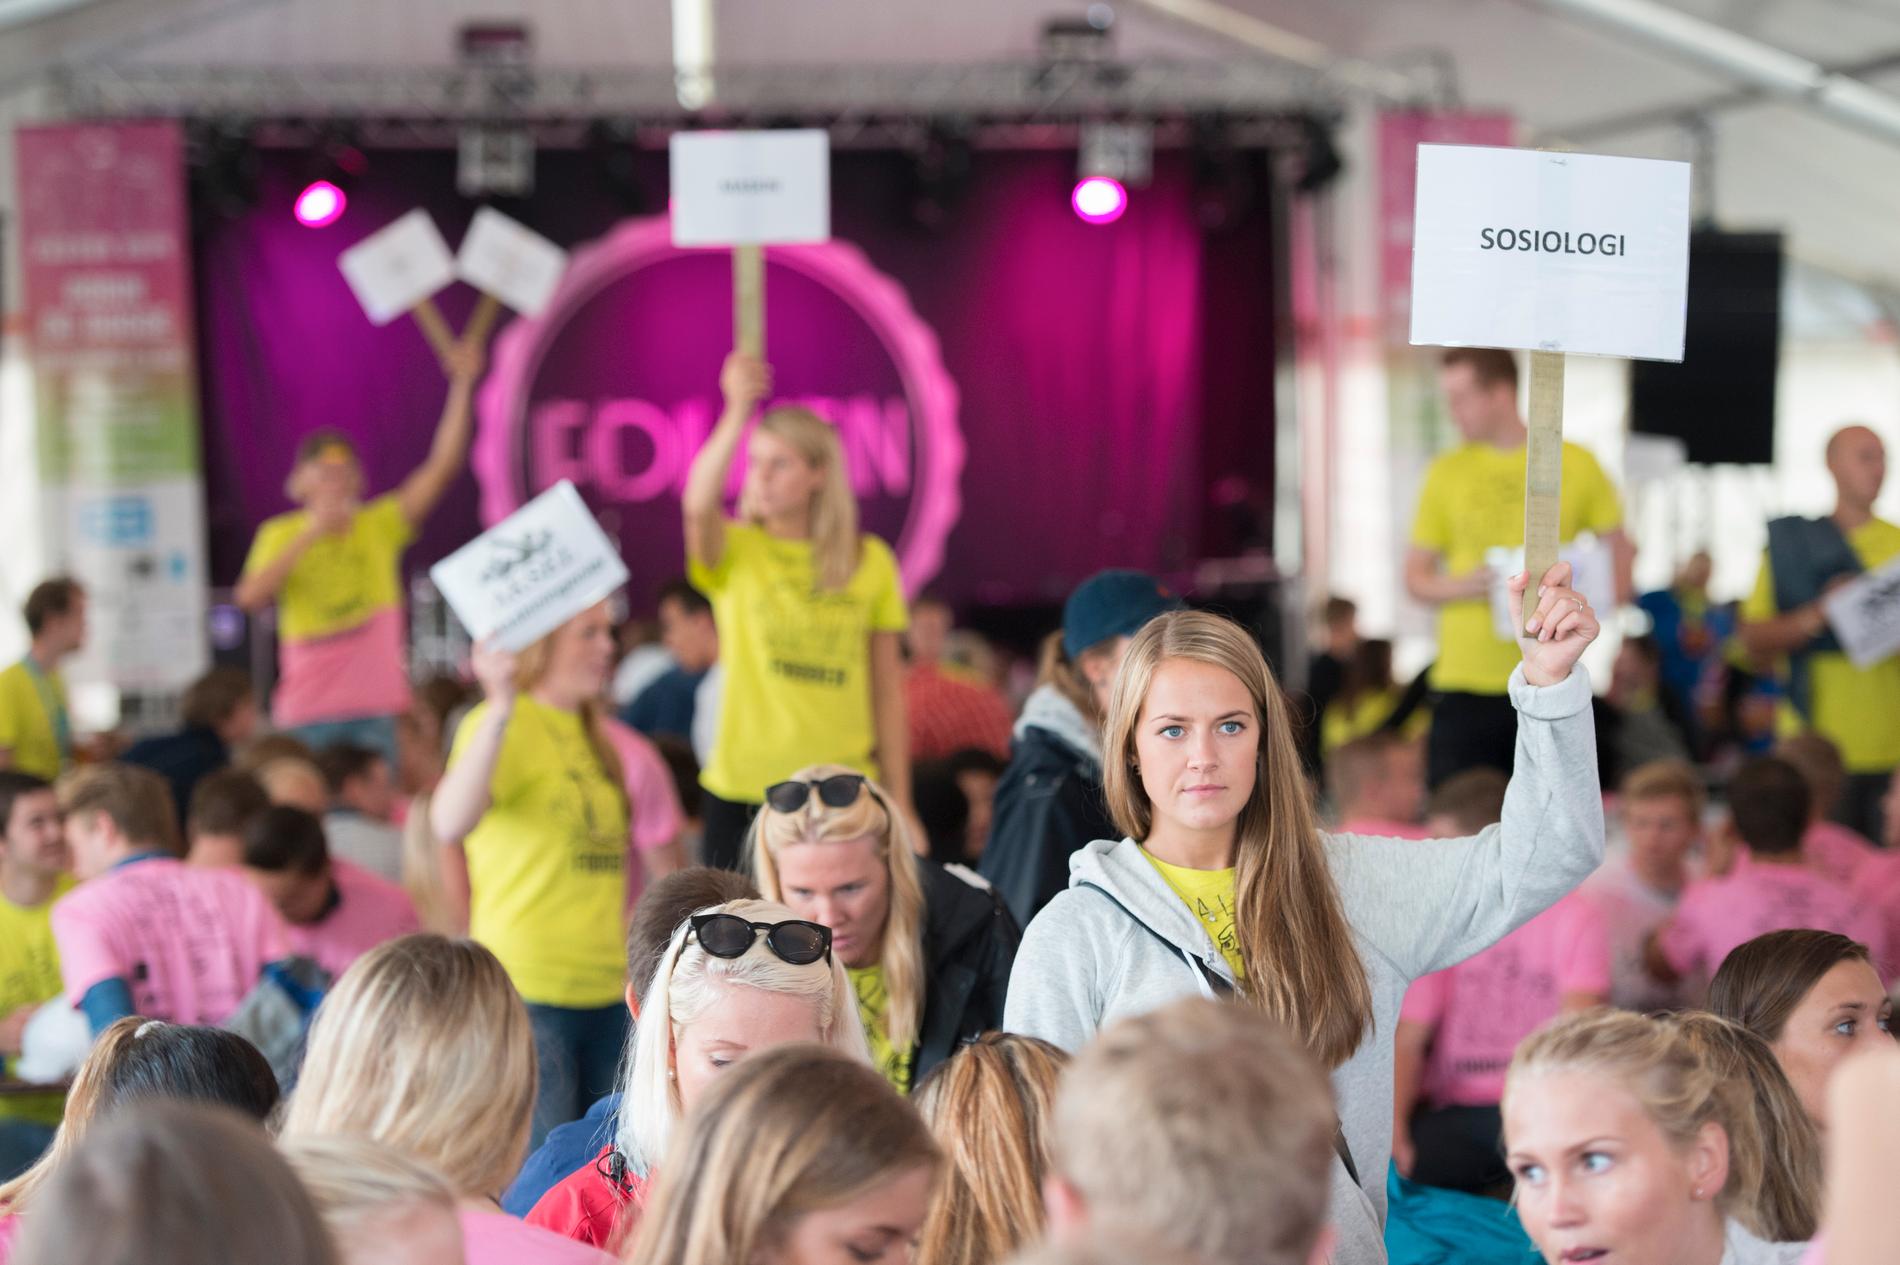 SELVTILLIT: Ingenting å si på den blant studentene i Stavanger. Dette bildet er tatt fra fjorårets fadderarrangement.